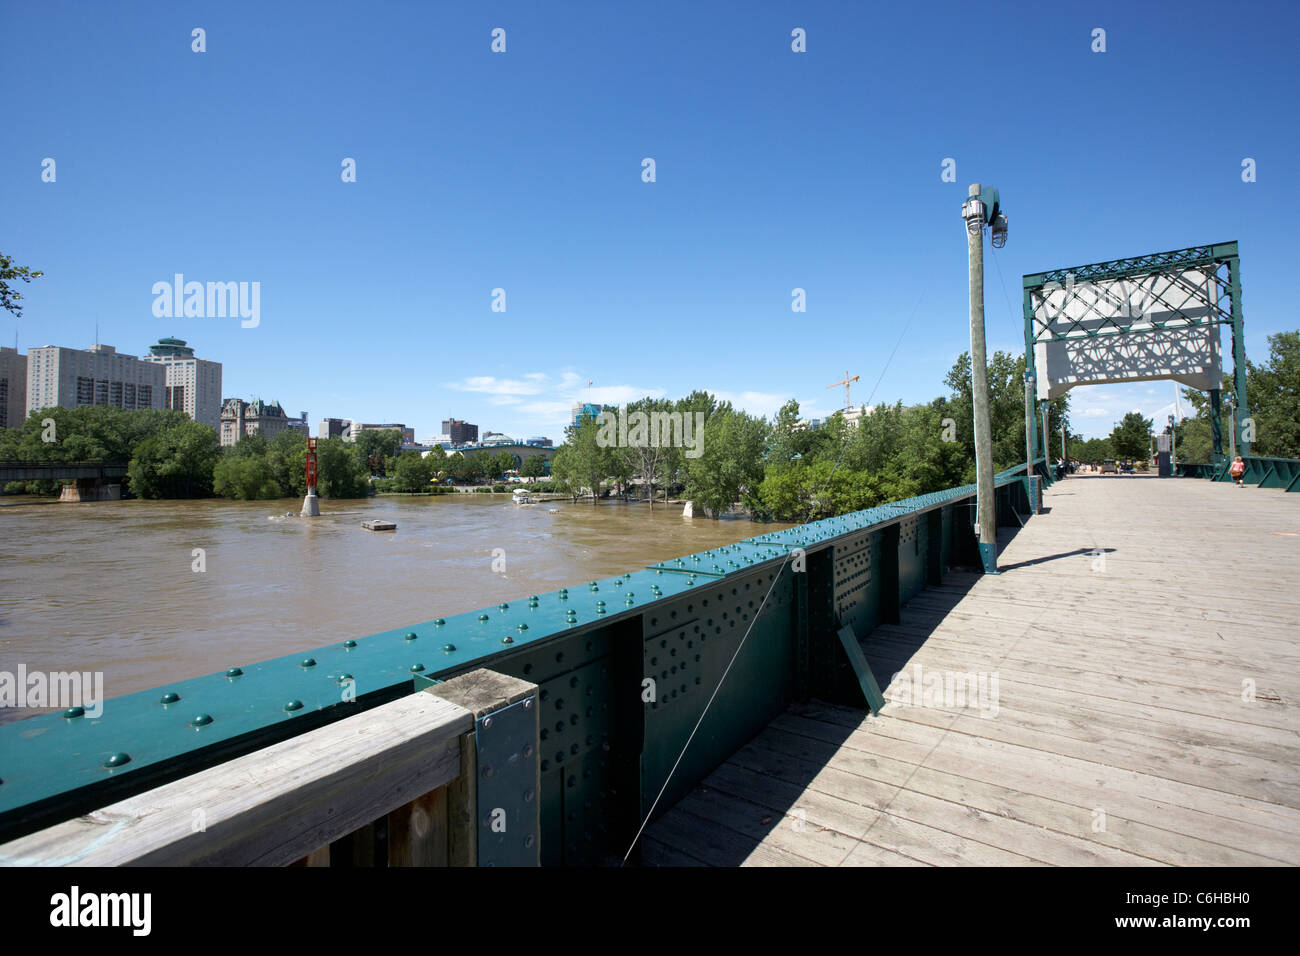 La rivière Assiniboine en vue d'inondation de l'ancien pont ferroviaire à la Fourche Winnipeg Manitoba Canada Banque D'Images